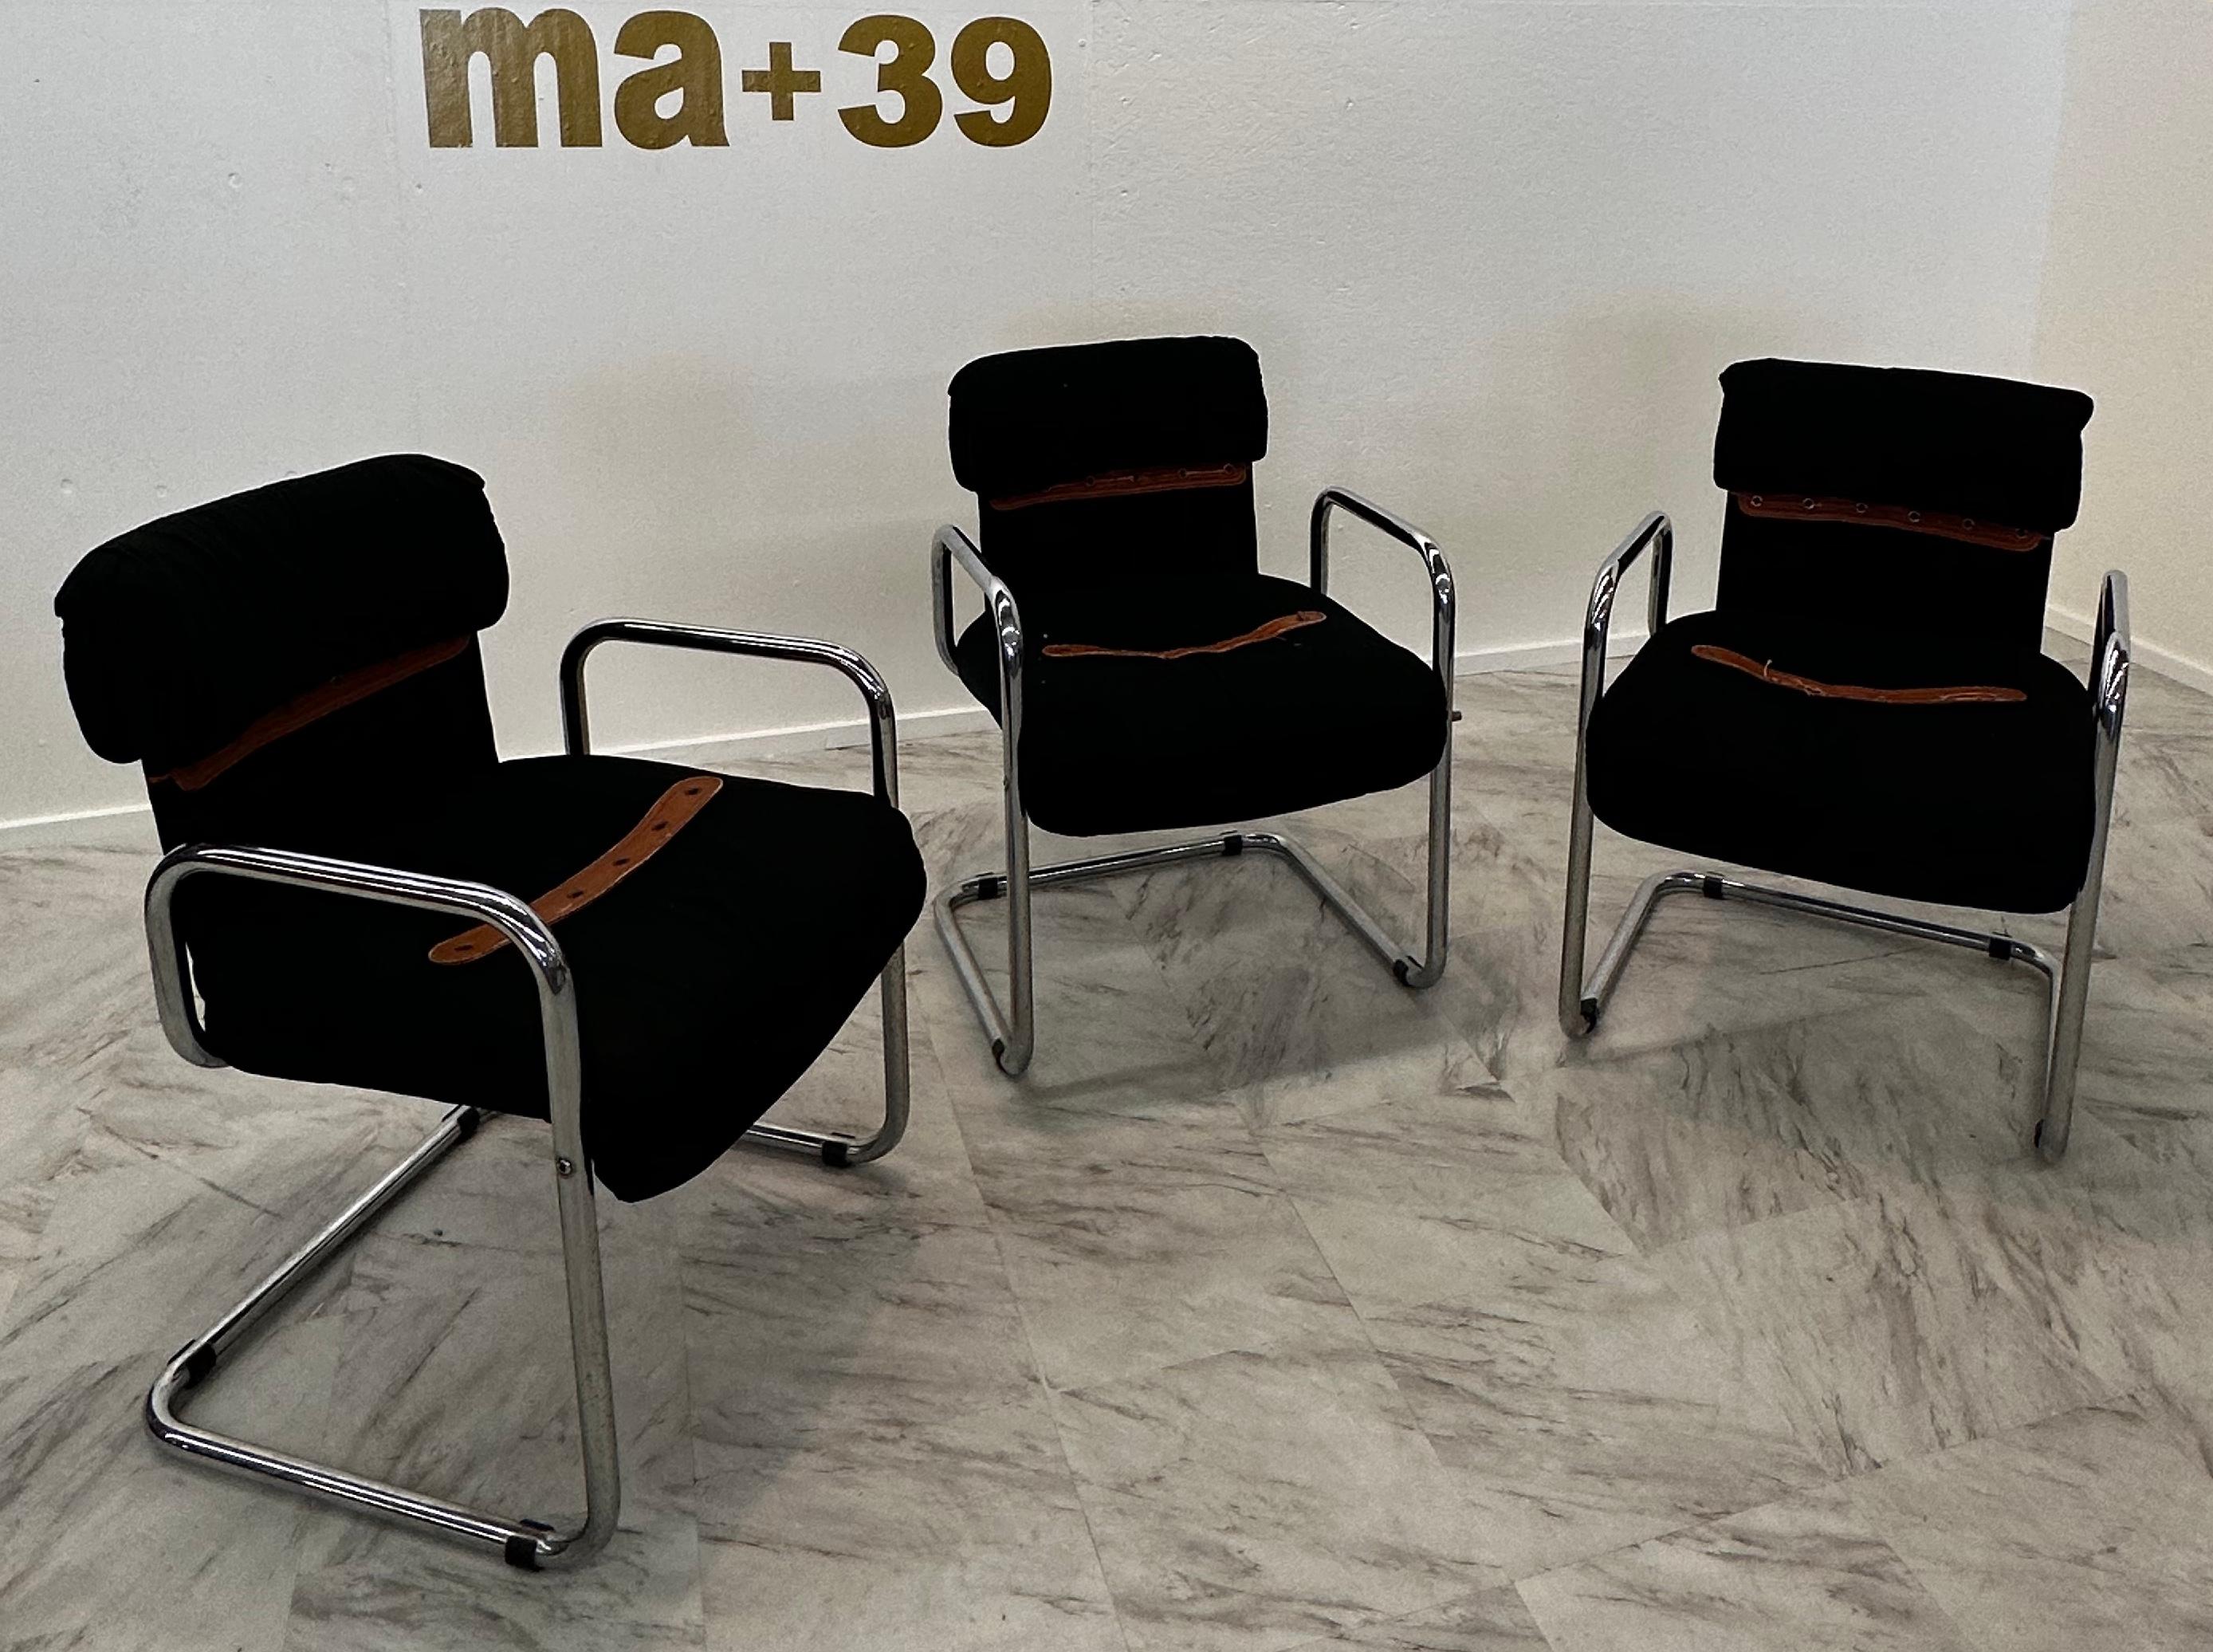 Dieses Set besteht aus drei exquisiten Esszimmerstühlen, die der berühmte italienische Designer Guido Faleschini in den 1980er Jahren exklusiv für Hermes entworfen hat. Die Kreationen von Faleschini sind bekannt für ihre Verschmelzung von Luxus,